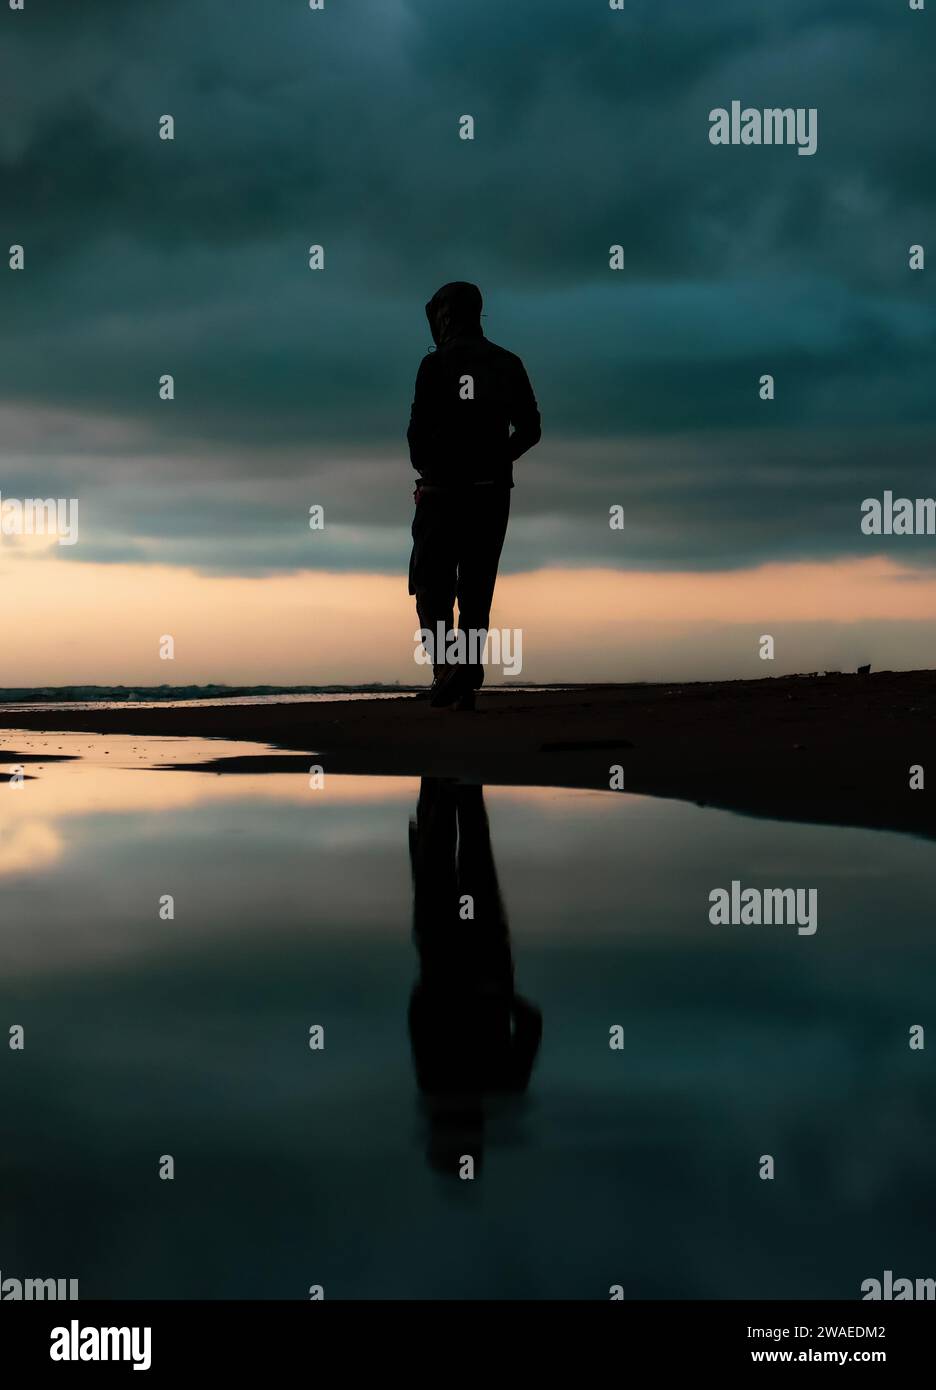 un homme reflété dans l’eau, un homme solitaire, une photographie mélancolique pleine de sens / réflexe de l’homme Banque D'Images